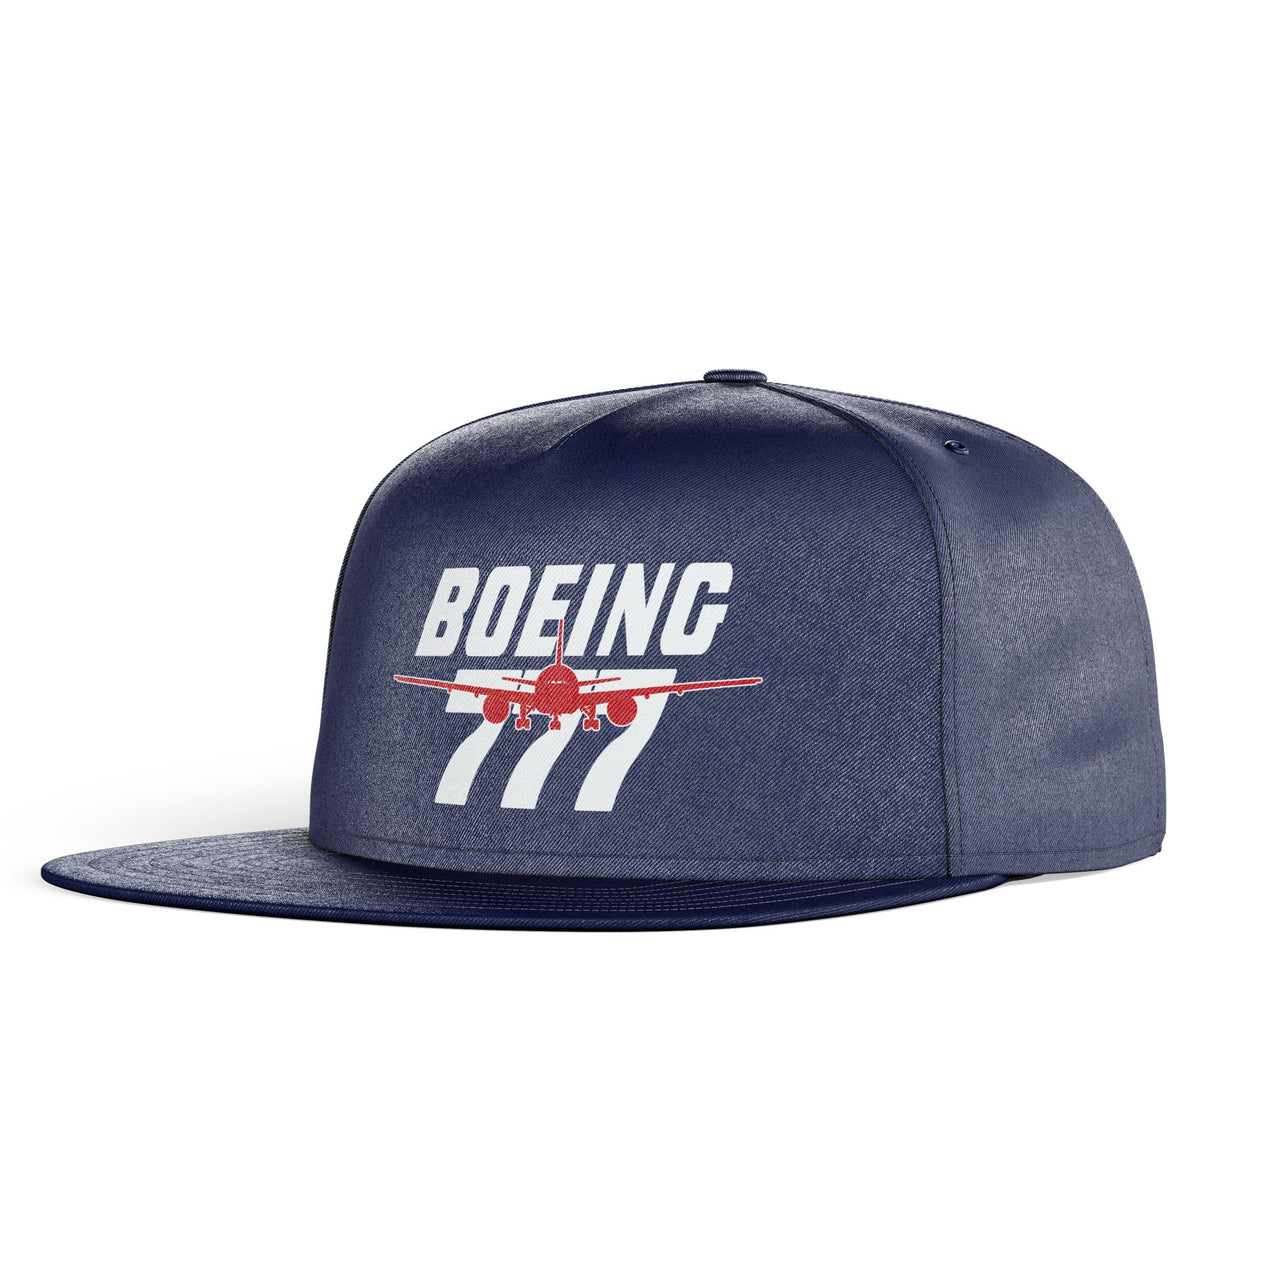 Amazing Boeing 777 Designed Snapback Caps & Hats